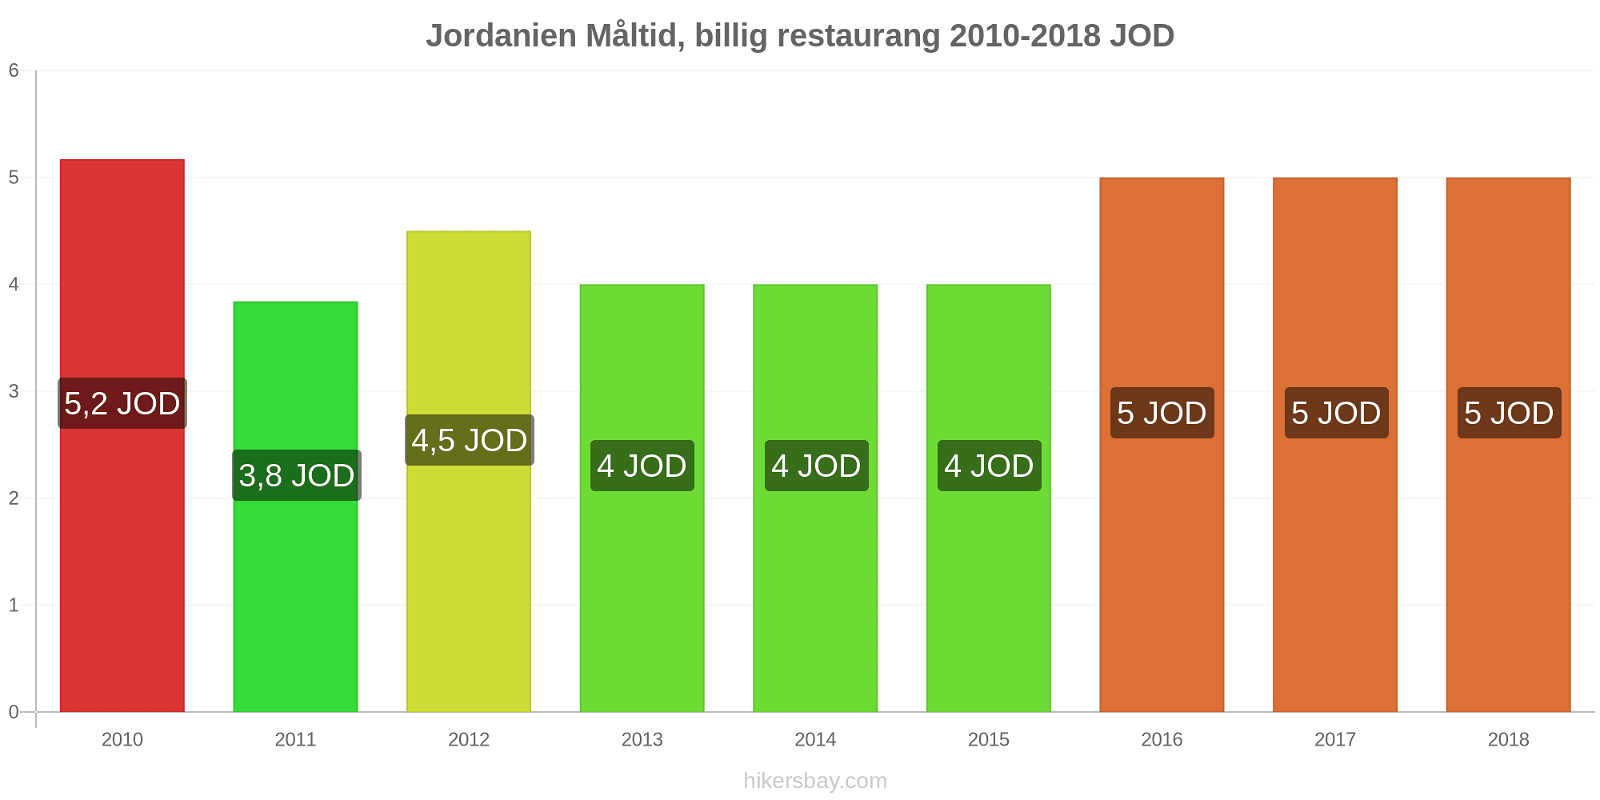 Jordanien prisändringar Måltid i en billig restaurang hikersbay.com